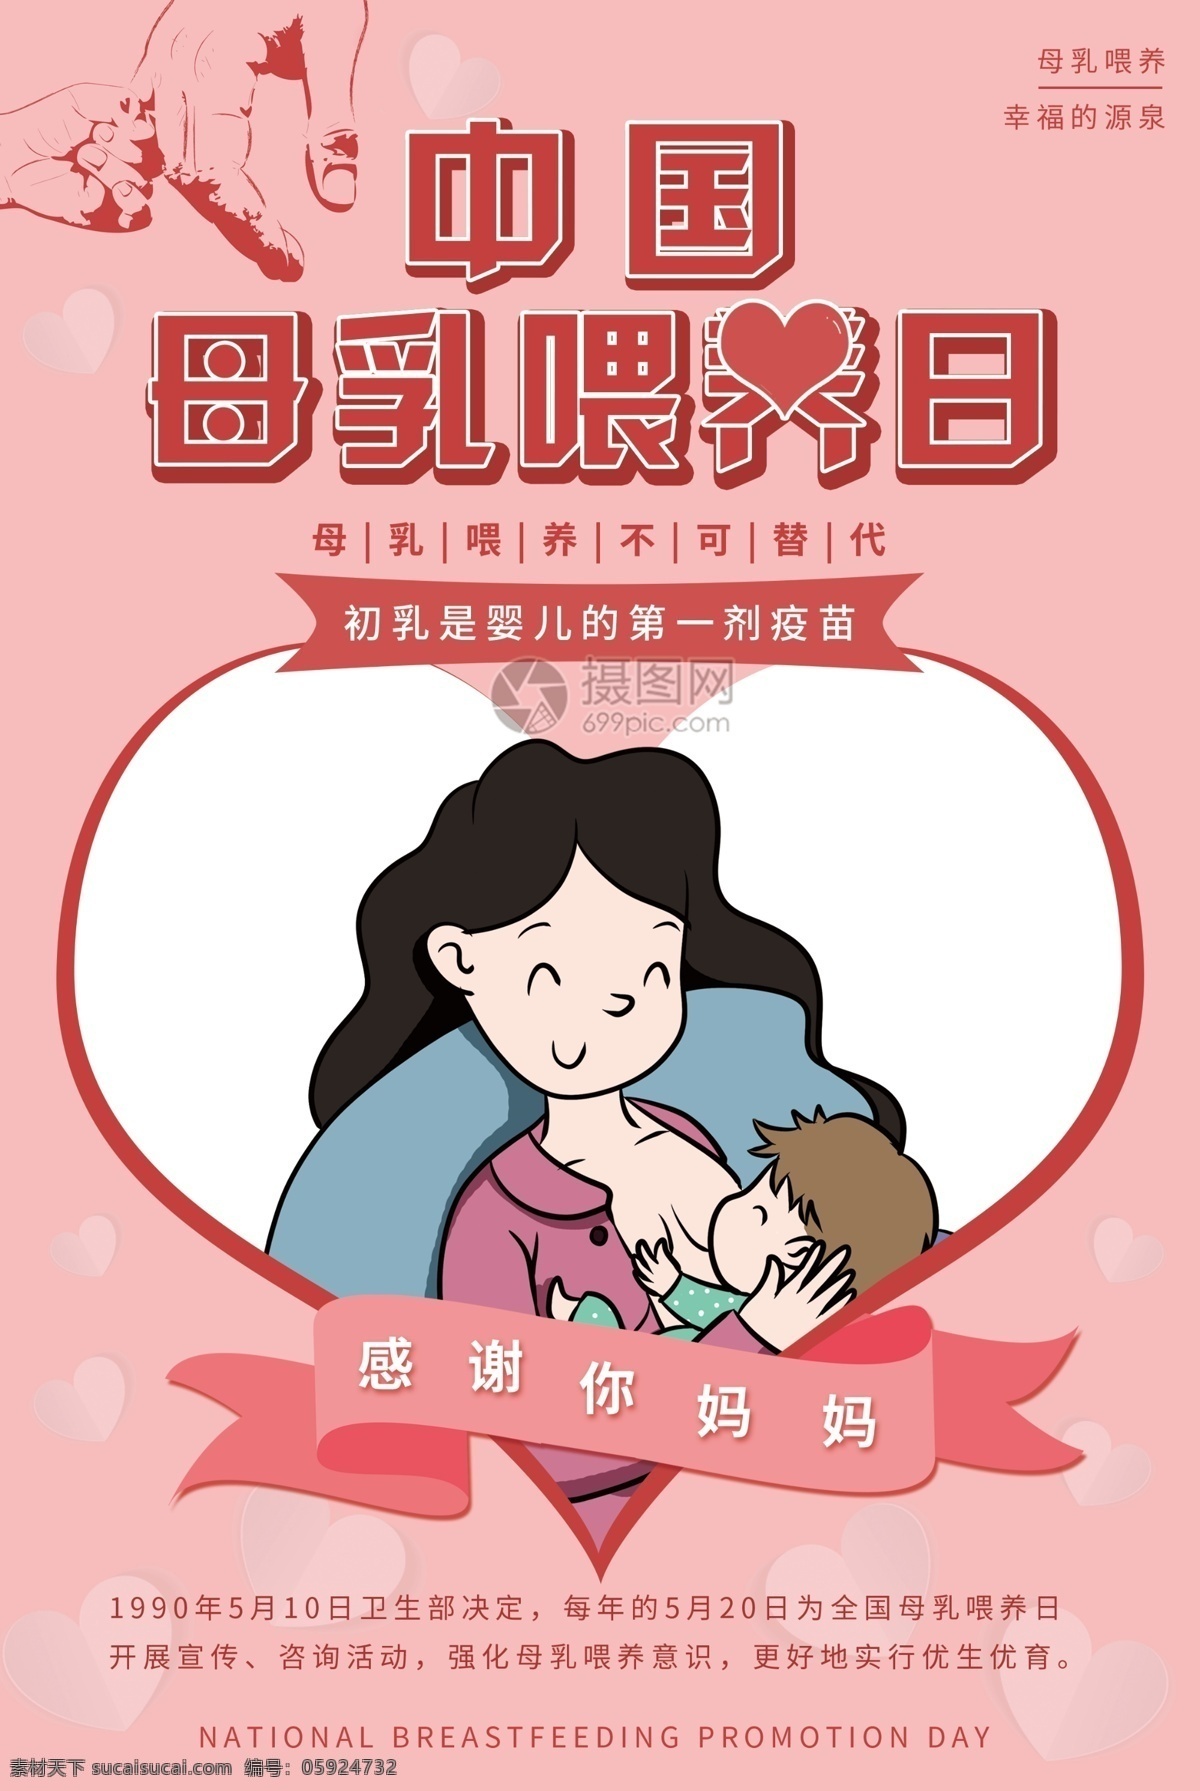 粉色 唯美 中国 母乳 喂养 日 宣传海报 母乳喂养 纯母乳 哺乳 母亲 母婴 妈妈 宝宝 婴儿 抱婴儿 喂奶 手拉手 公益海报 母婴海报